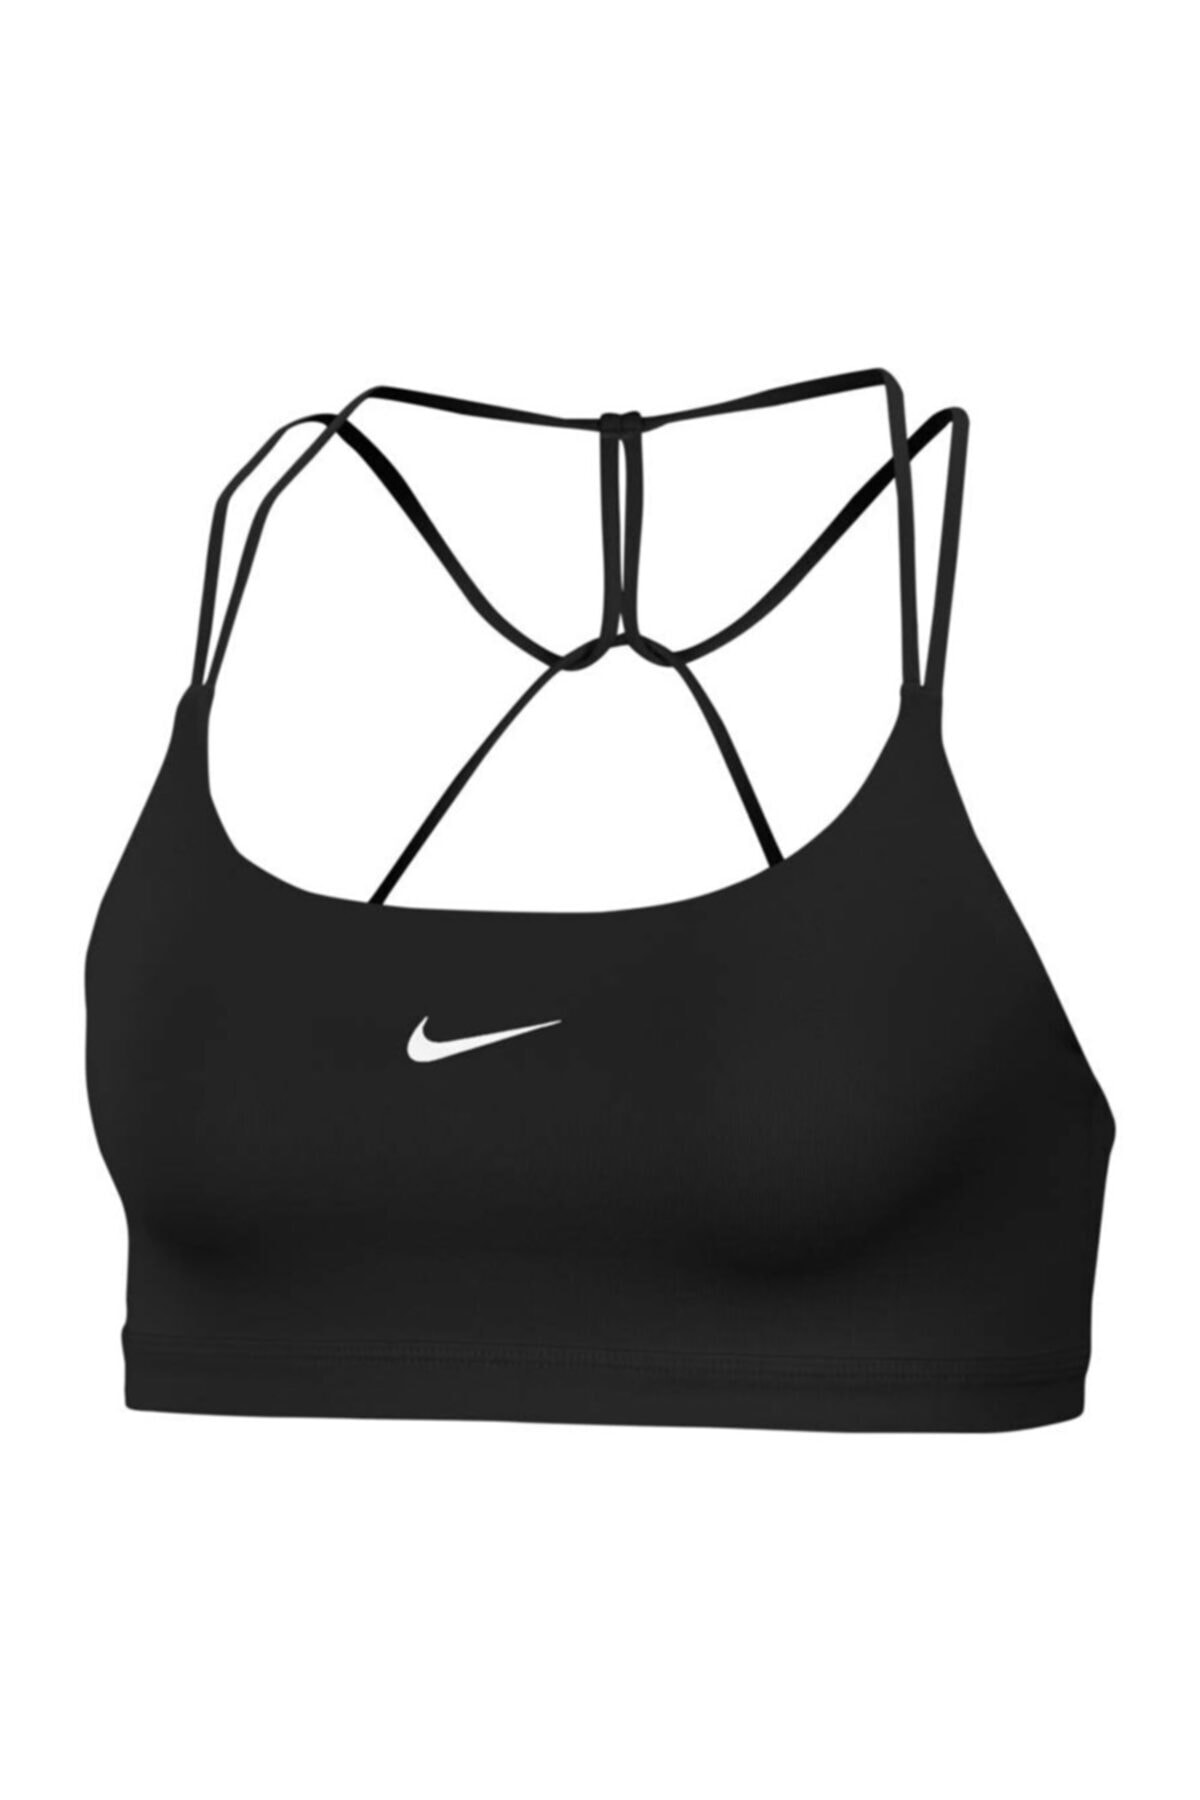 Nike W Nk Df Indy Strpy Nonpded Bra Kadın Siyah Sporcu Sütyeni - Ct3721-010